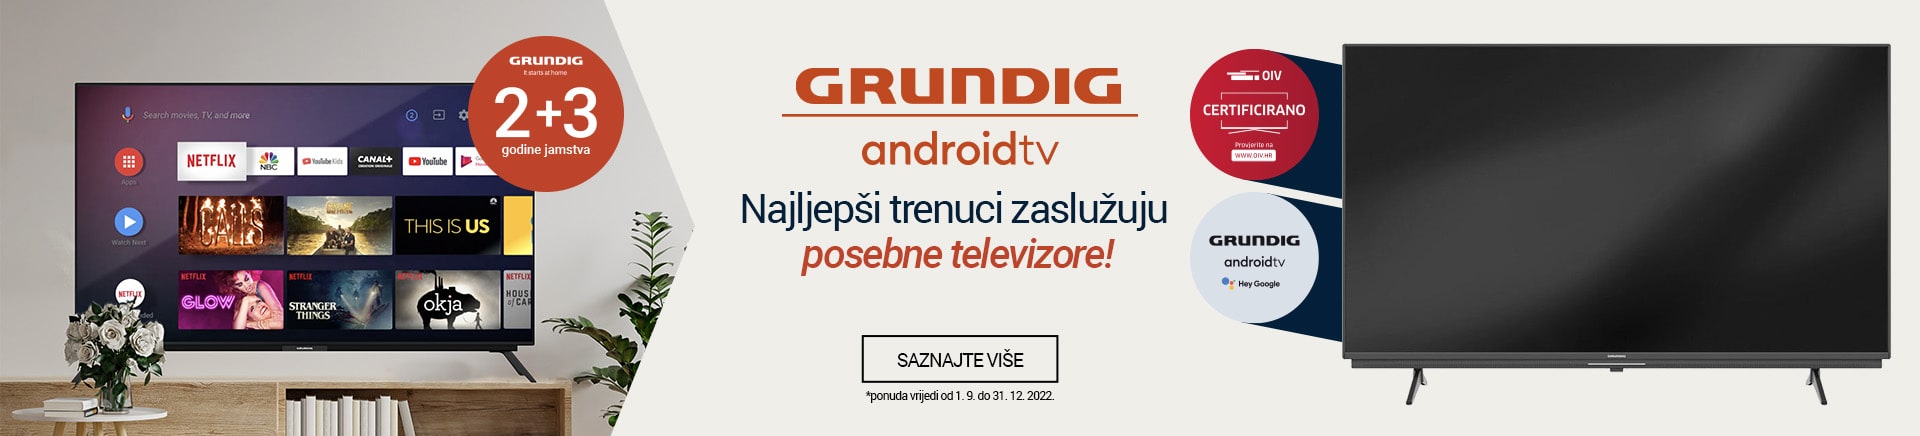 GRUNDIG android tv 2+3 godine jamstva